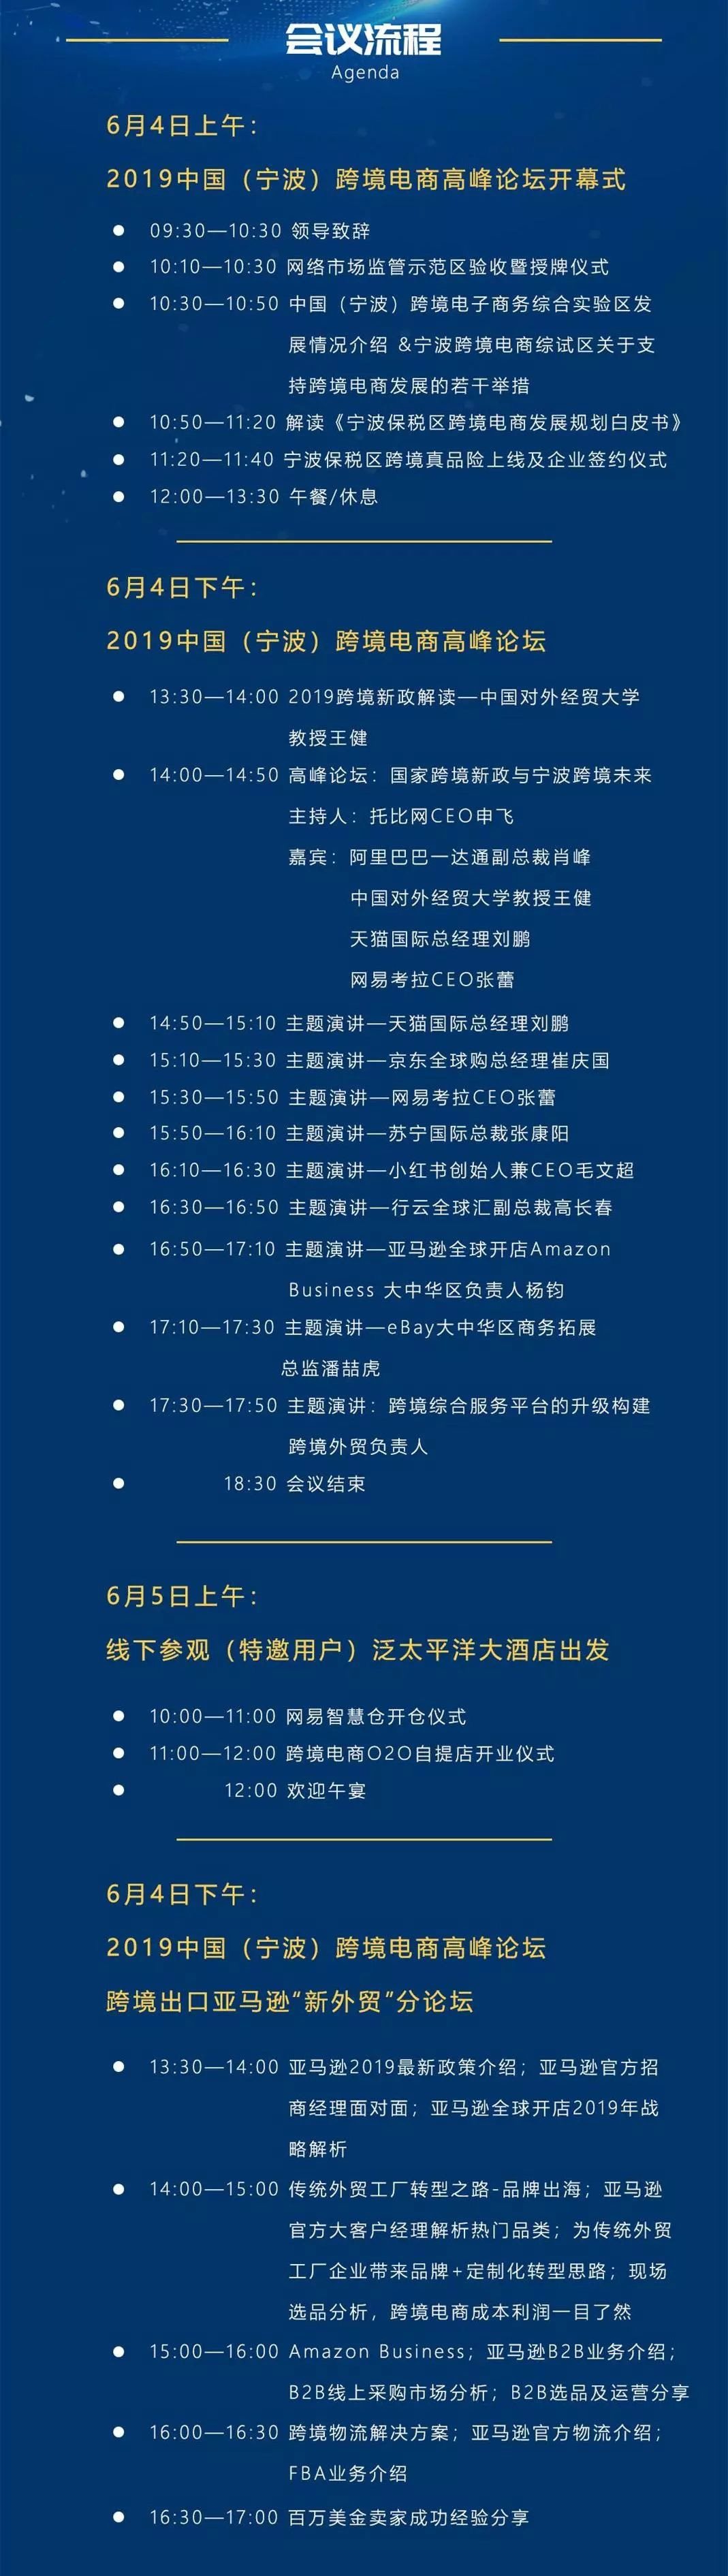 2019年中国（宁波）跨境电商高峰论坛